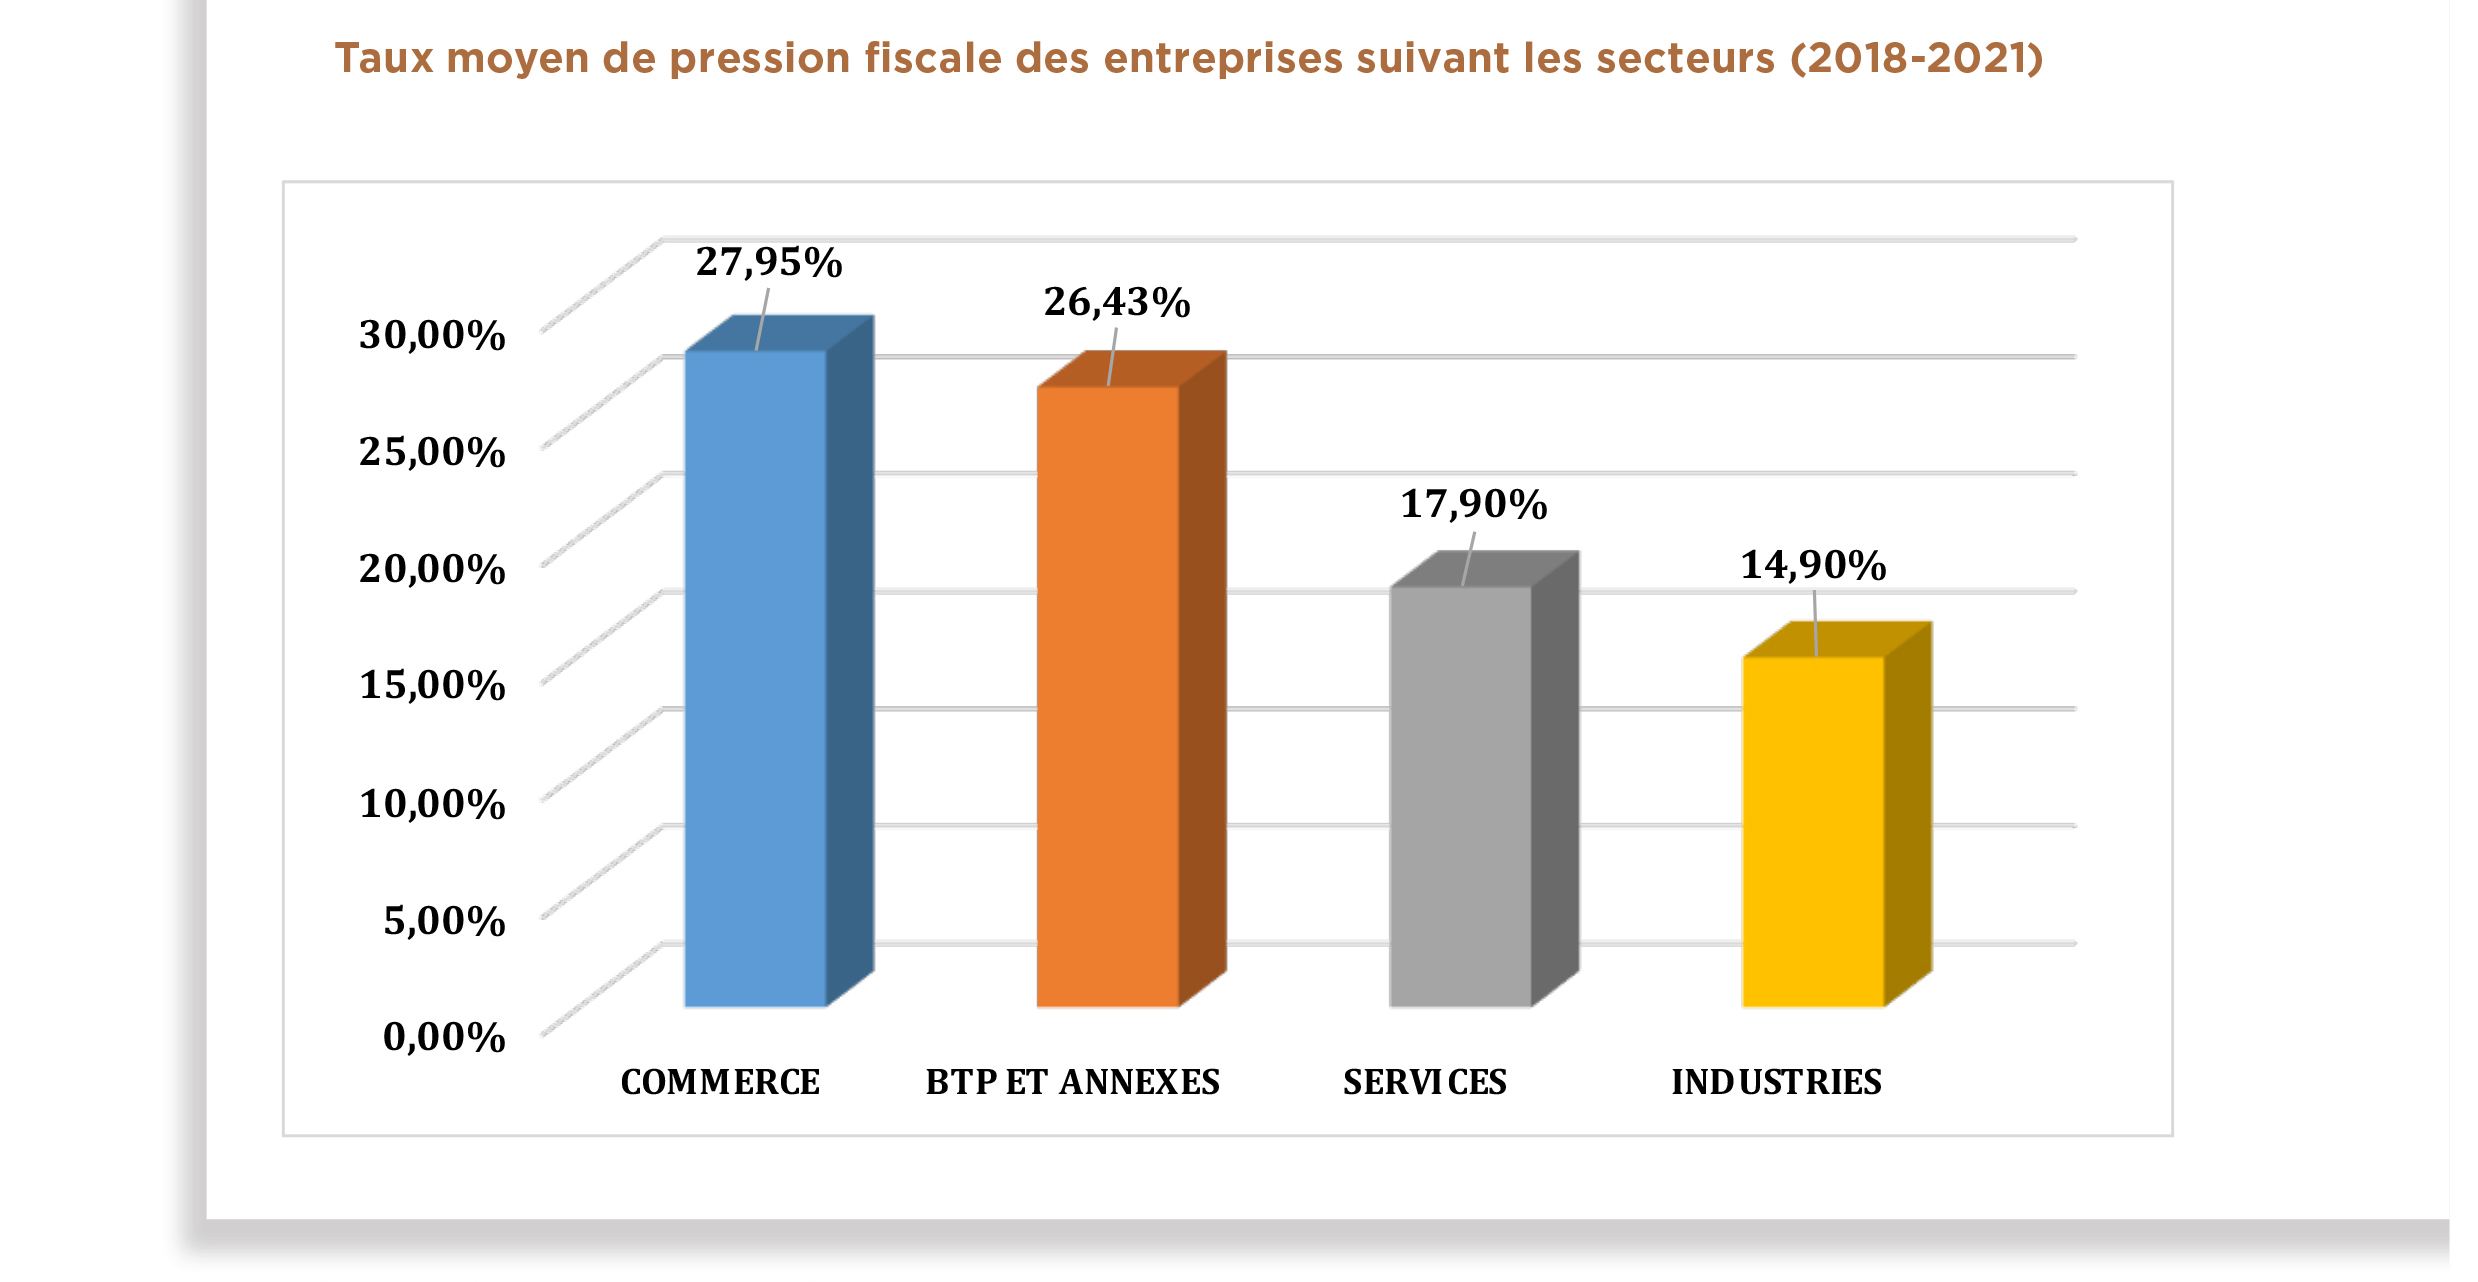 Sénégal: Les entreprises du Commerce et des BTP-Annexes enregistrent les forts taux de pression fiscale